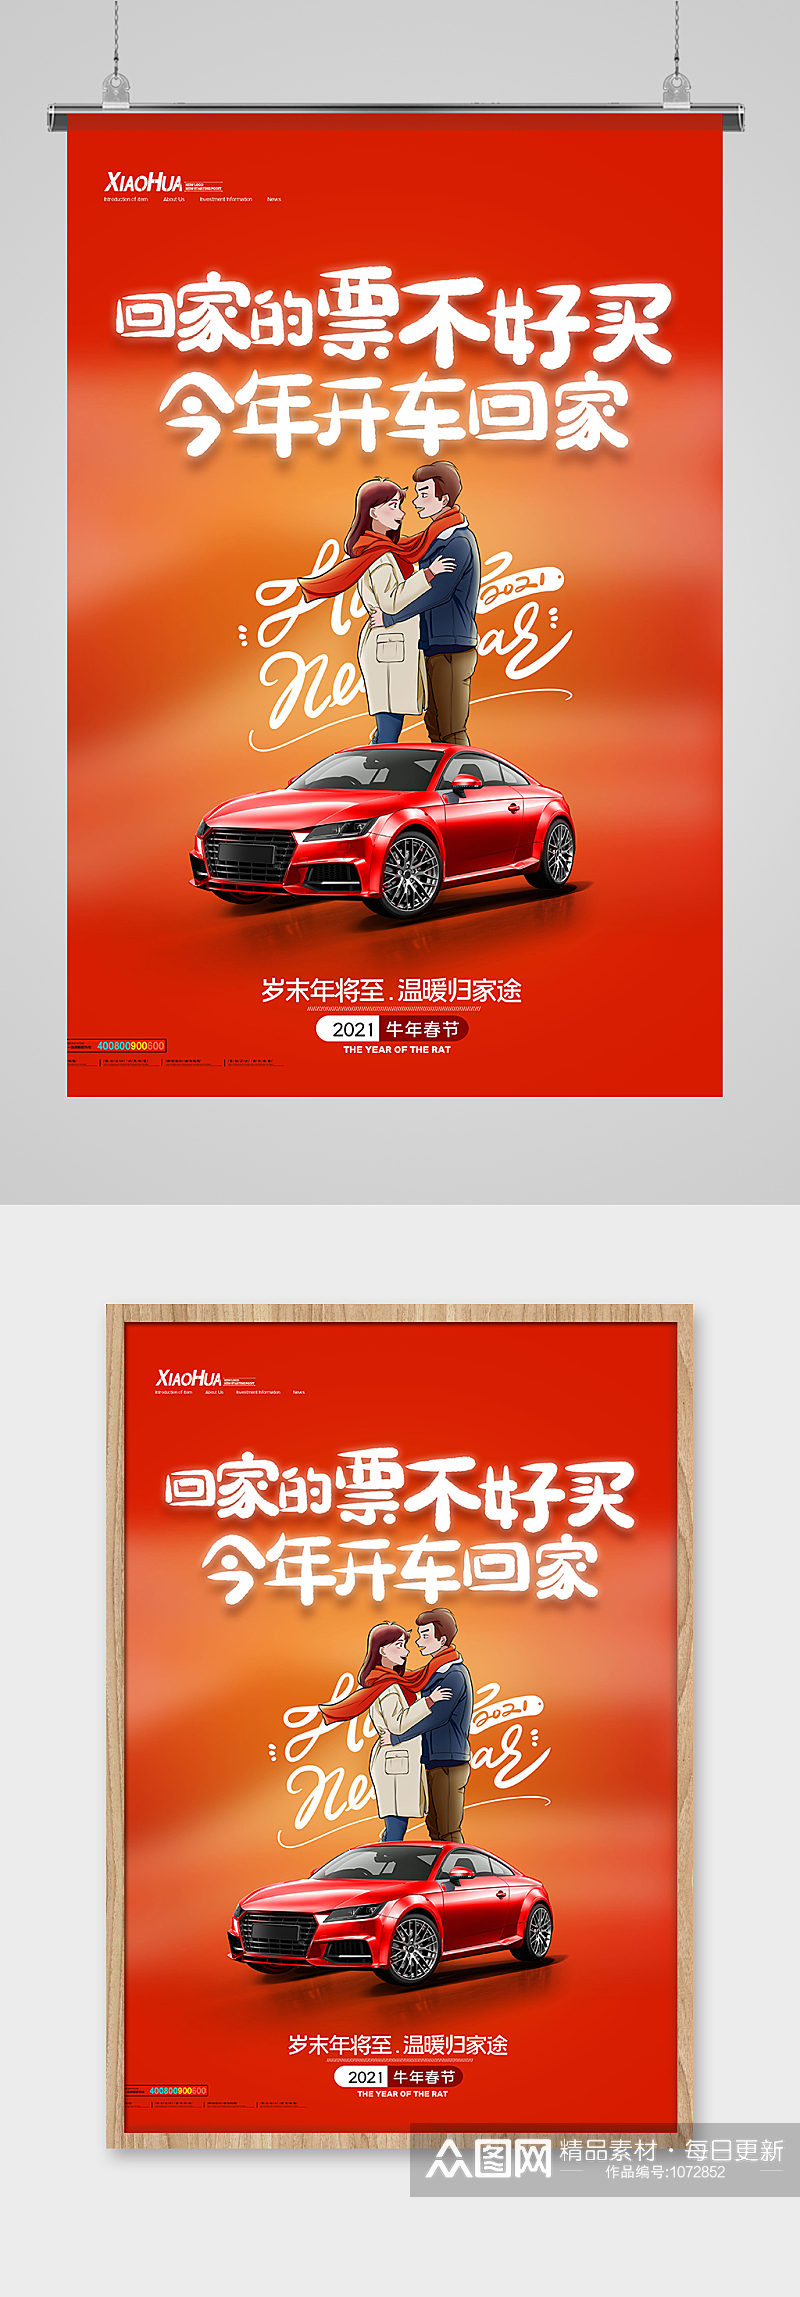 红色创意文案今年开车回家汽车海报设计素材